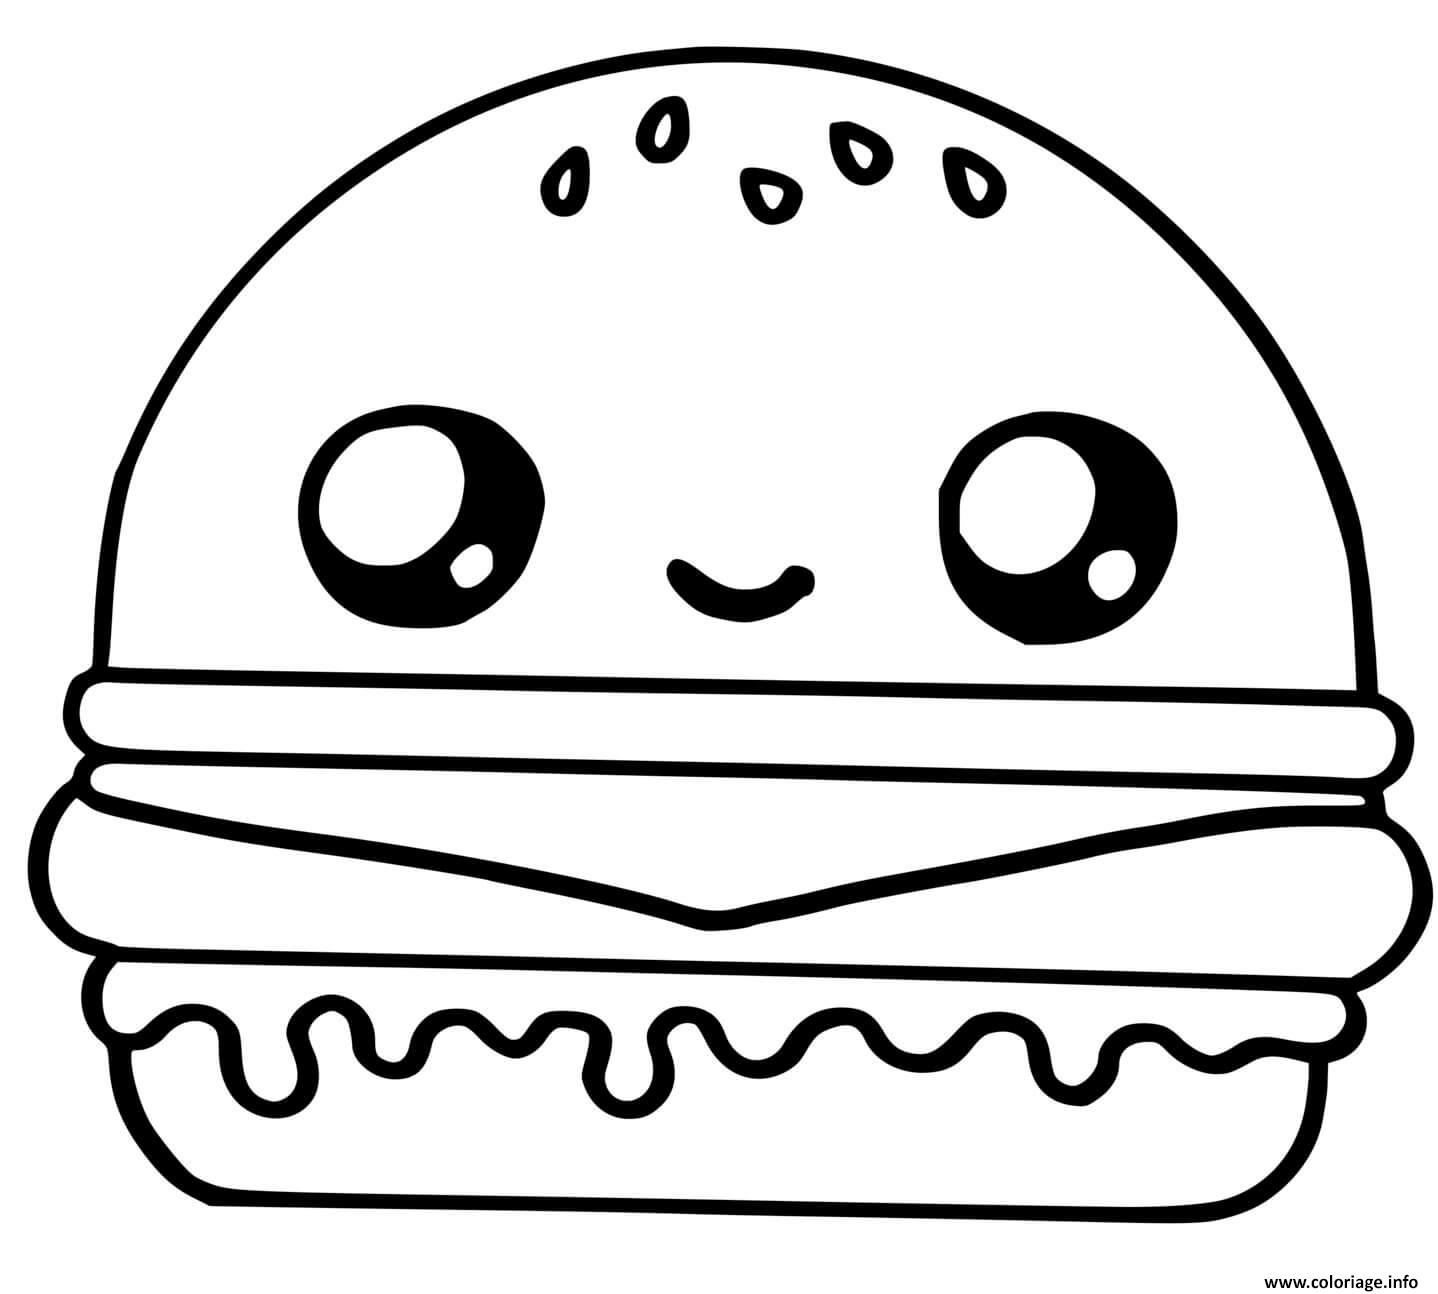 Dessin cute hamburger food kawaii Coloriage Gratuit à Imprimer